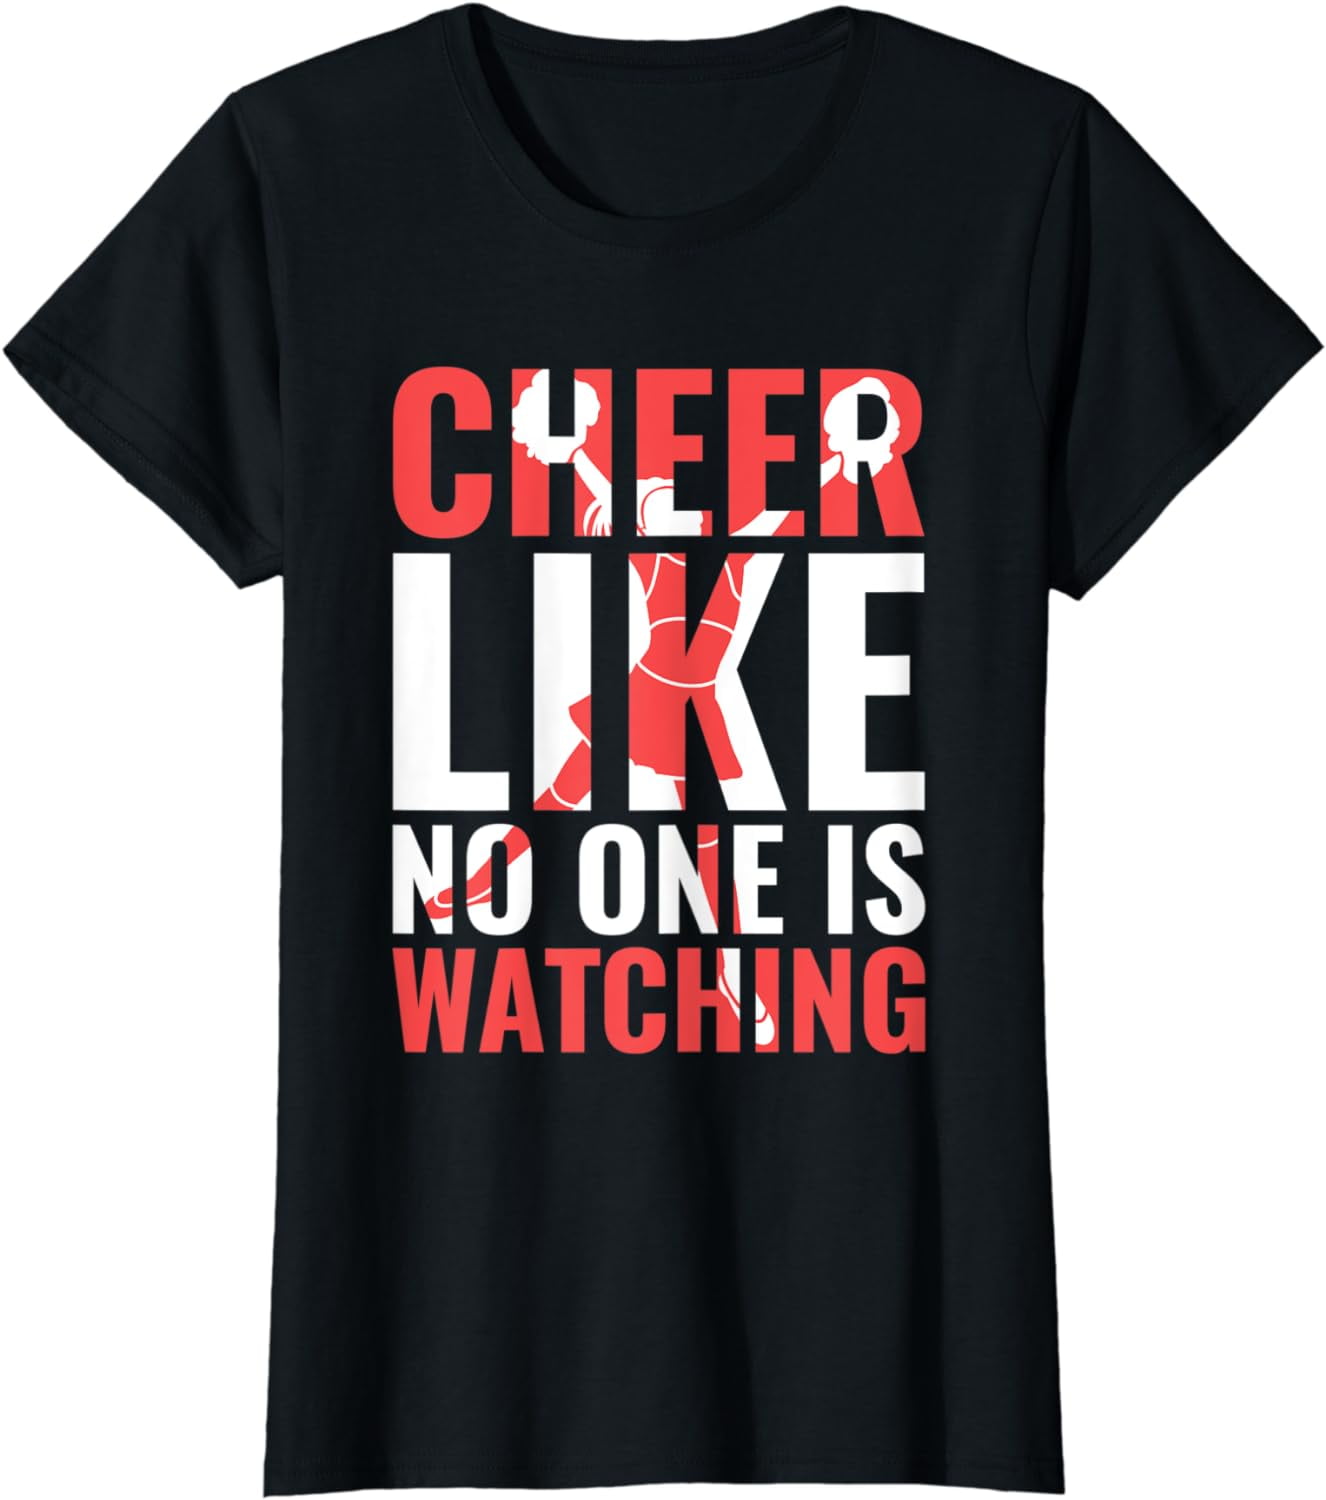 Womens Cheer Like No One Is Watching Cheerleading Cheerleader T-Shirt ...